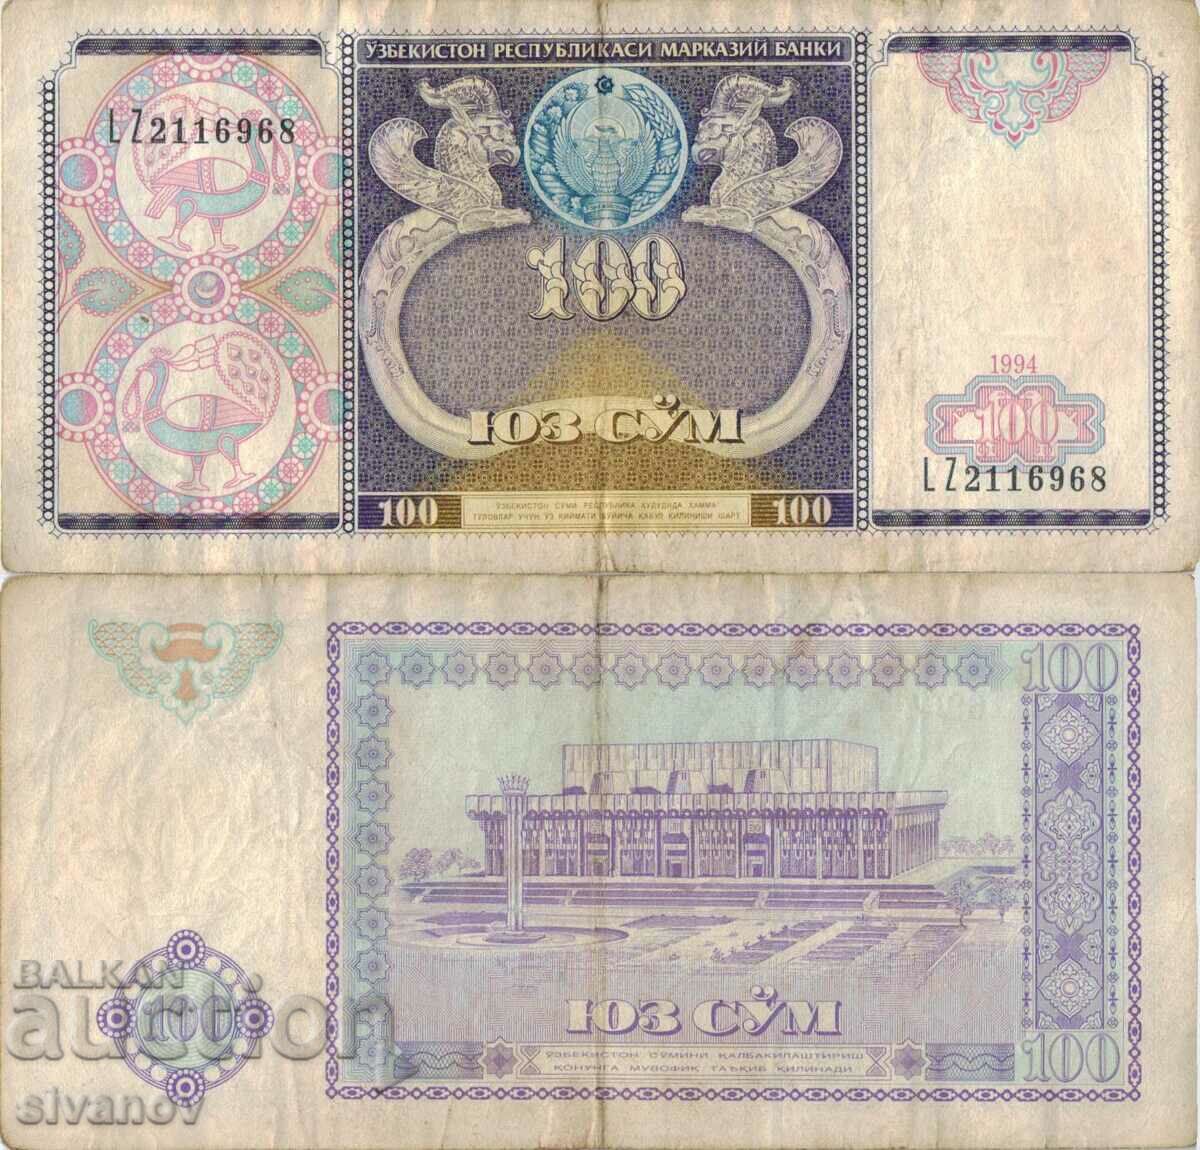 Uzbekistan 100 soum 1994 bancnota #5337